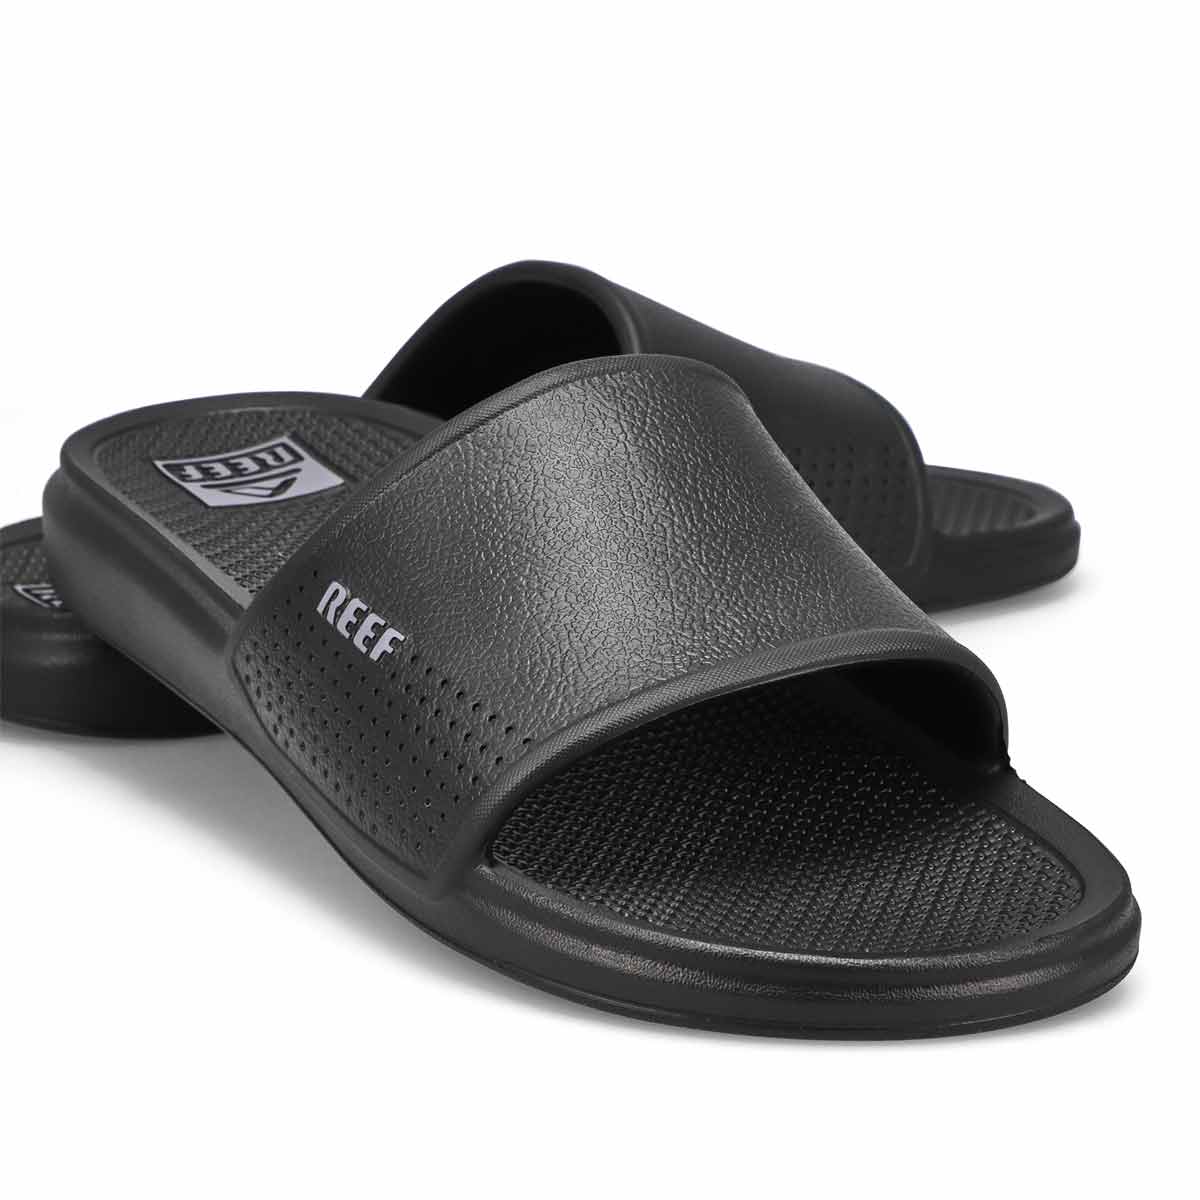 Men's Oasis Slide Sandal - Black